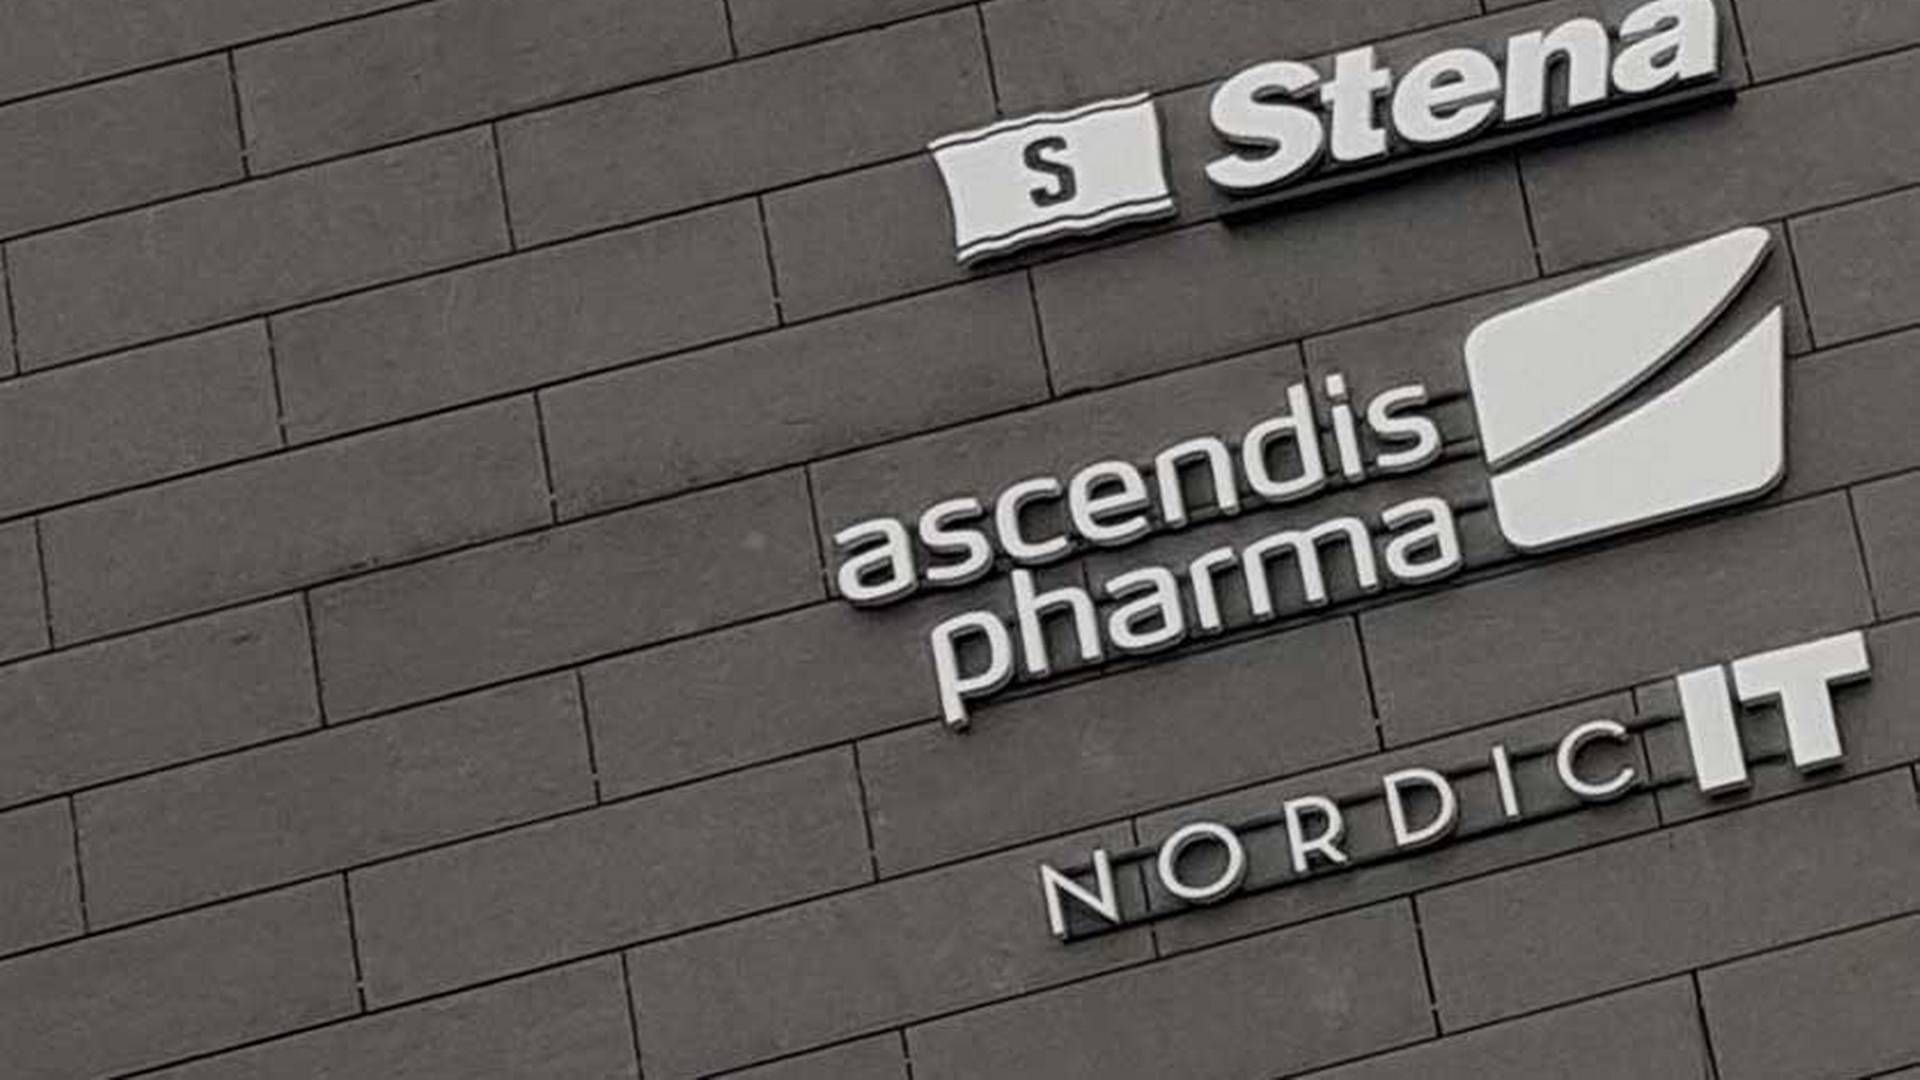 Ascendis Pharma har ikke et fuldt overblik over markedspotentialet for selskabets lægemiddel Yorvipath i Storbritannien, hvor det netop er levet godkendt. | Foto: Kevin Grønnemann / Medwatch